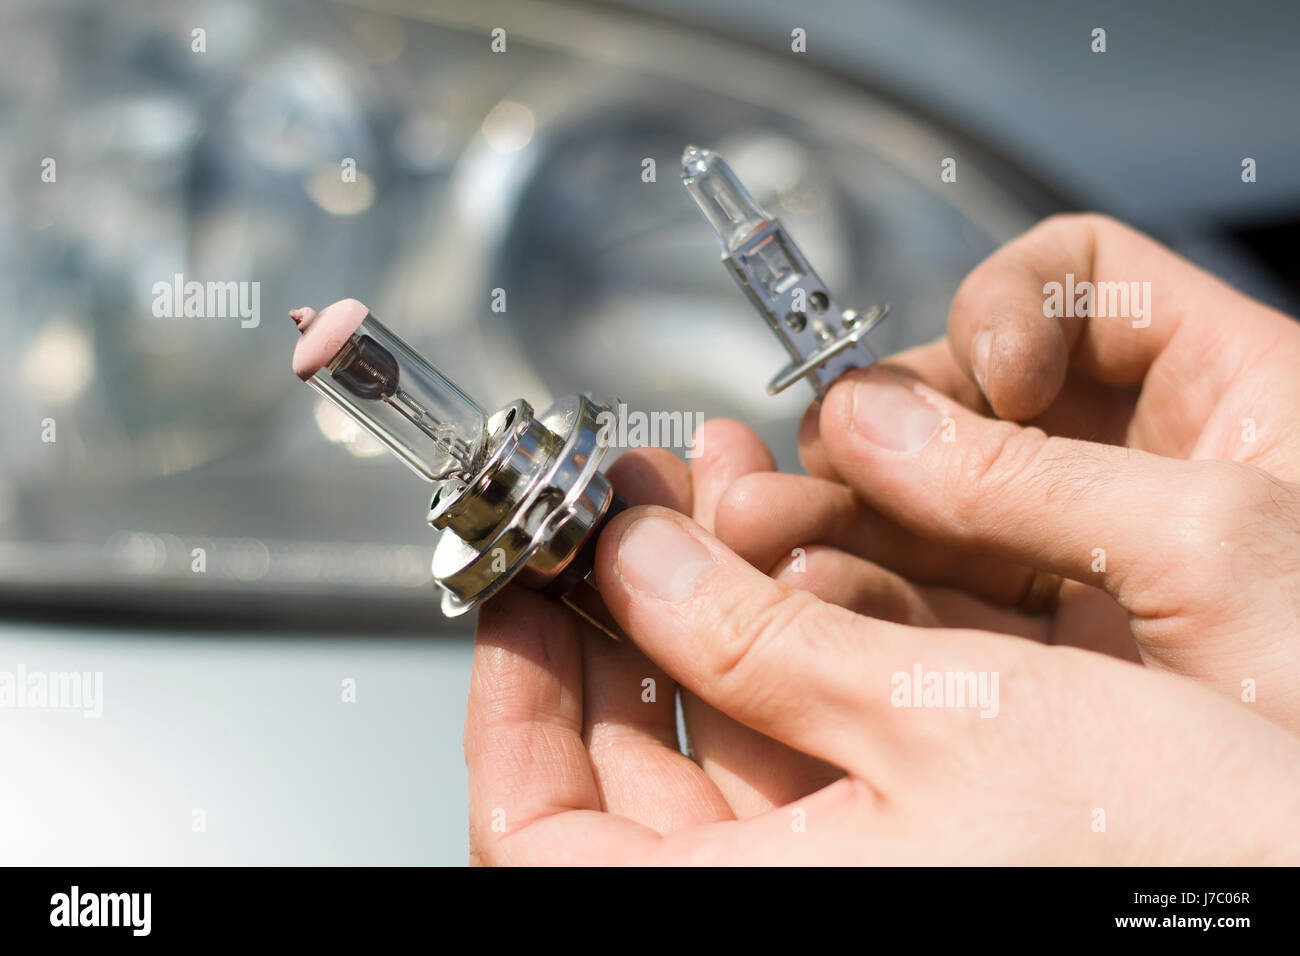 Der Mechaniker Hände halten das H1 und H7 Auto Glühbirnen Arten von Kfz  Glühlampen H1, H7 Stockfotografie - Alamy